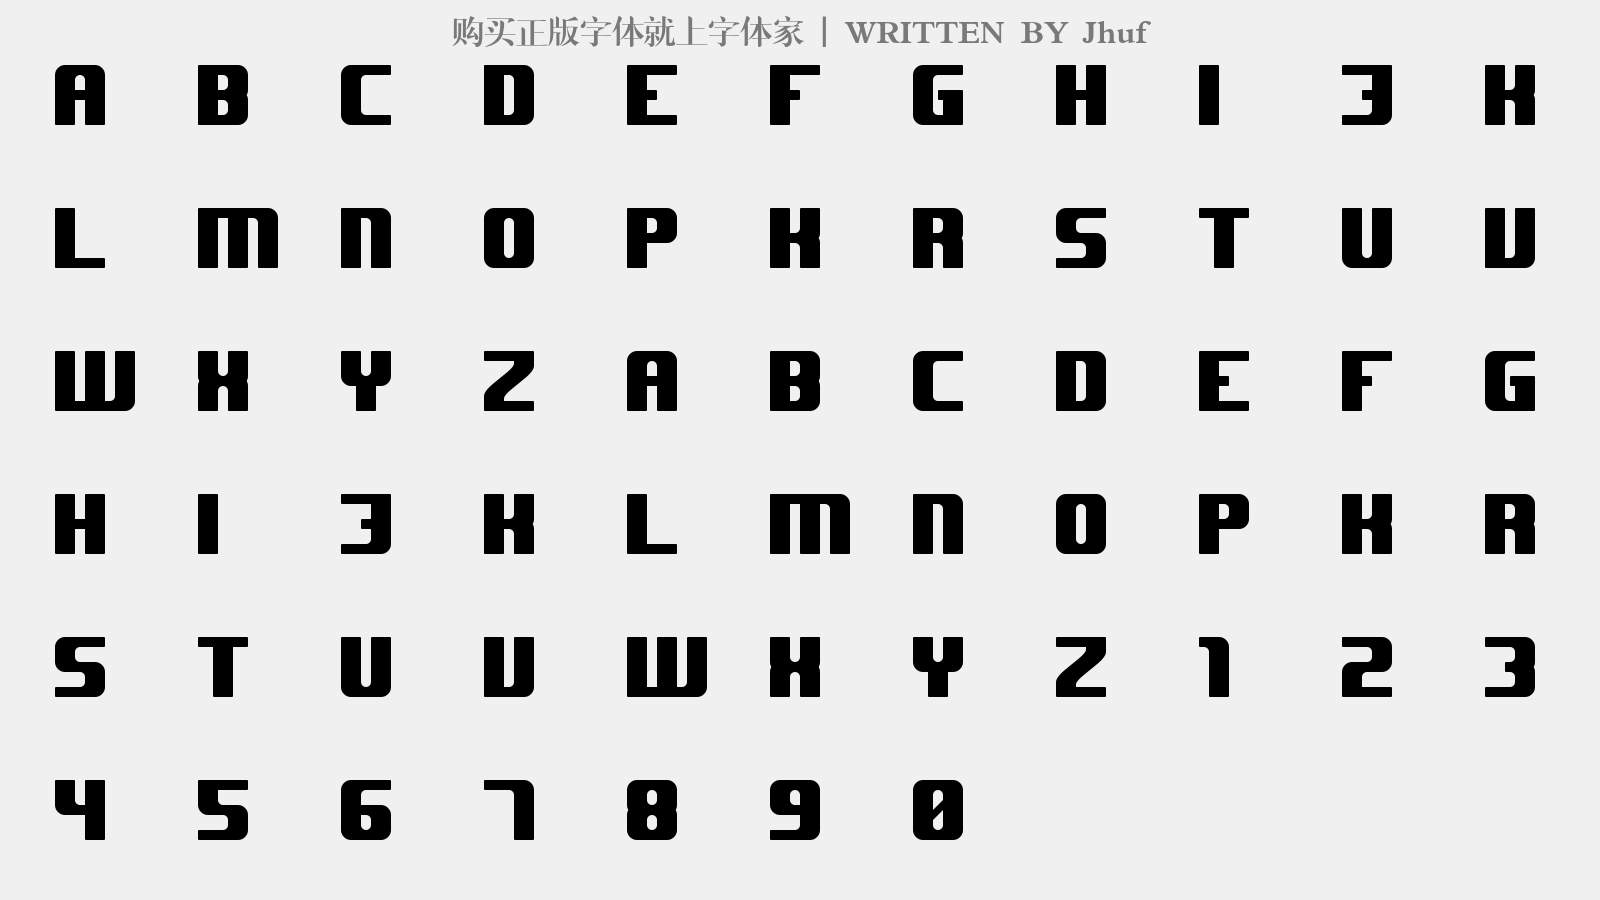 Jhuf - 大写字母/小写字母/数字